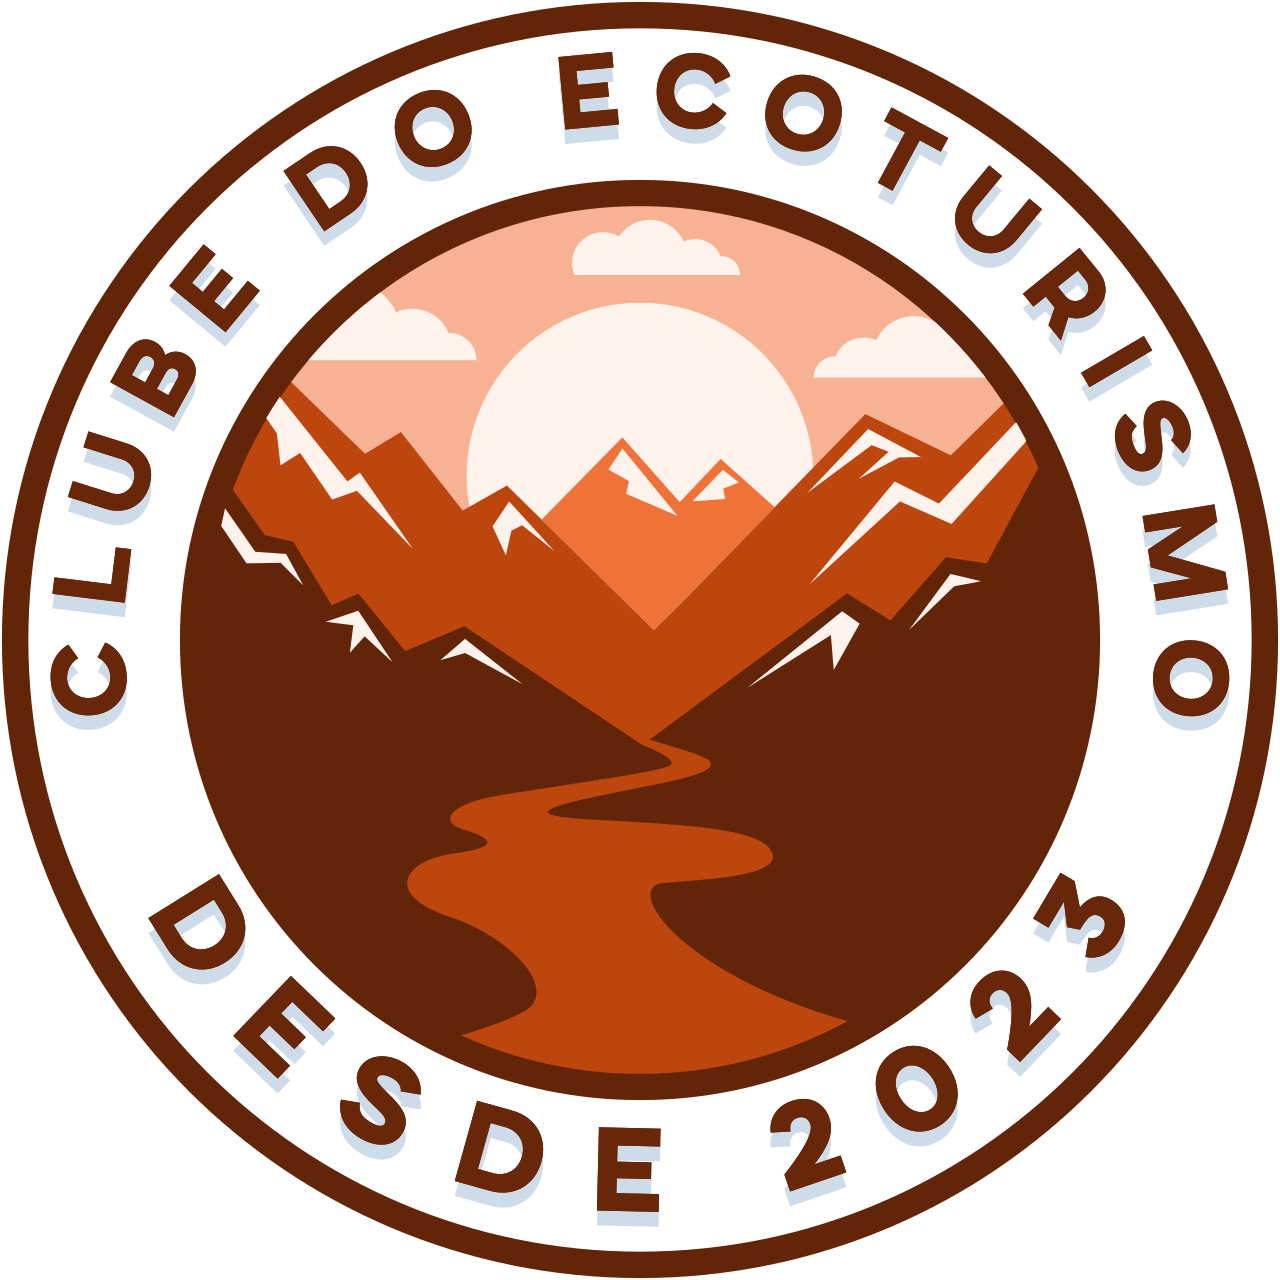 Clube do Ecoturismo's logo